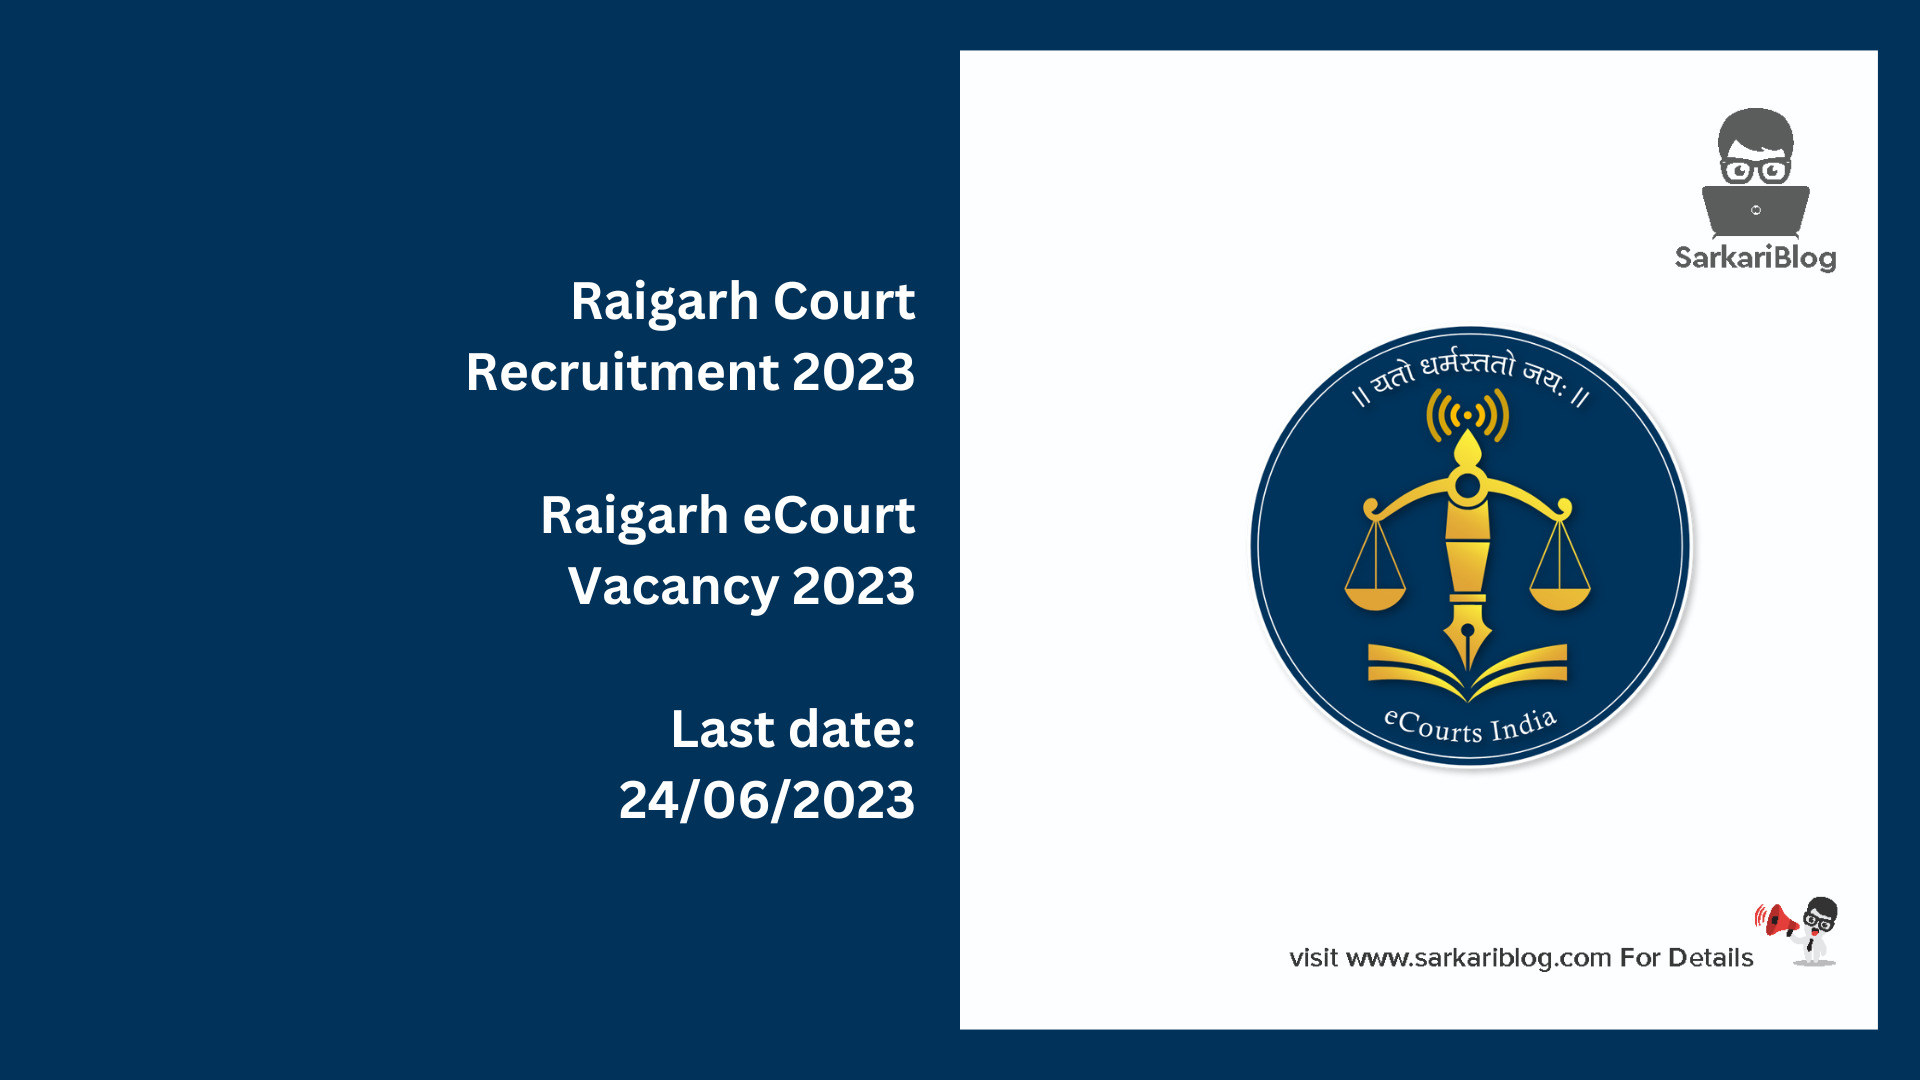 Raigarh Court Recruitment 2023